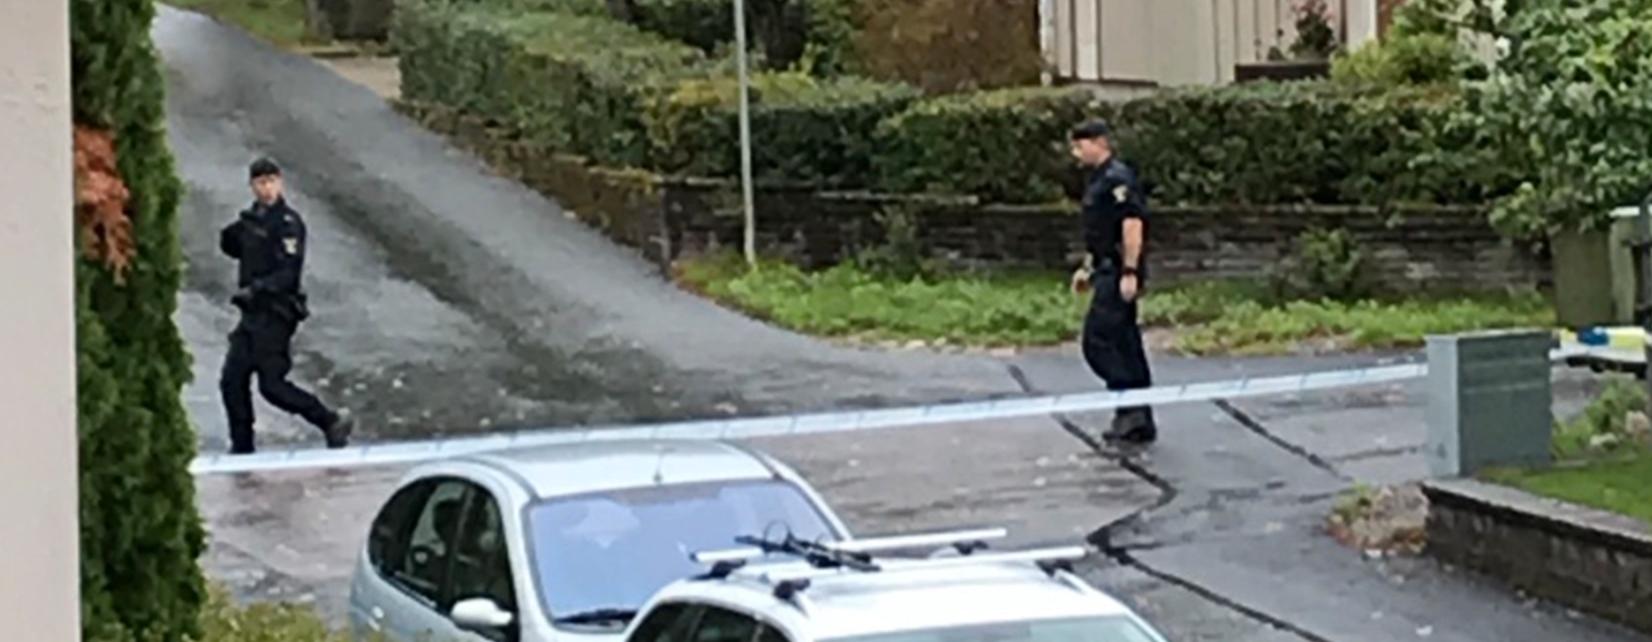 Polis på plats vid det misstänkta föremålet i Alingsås.